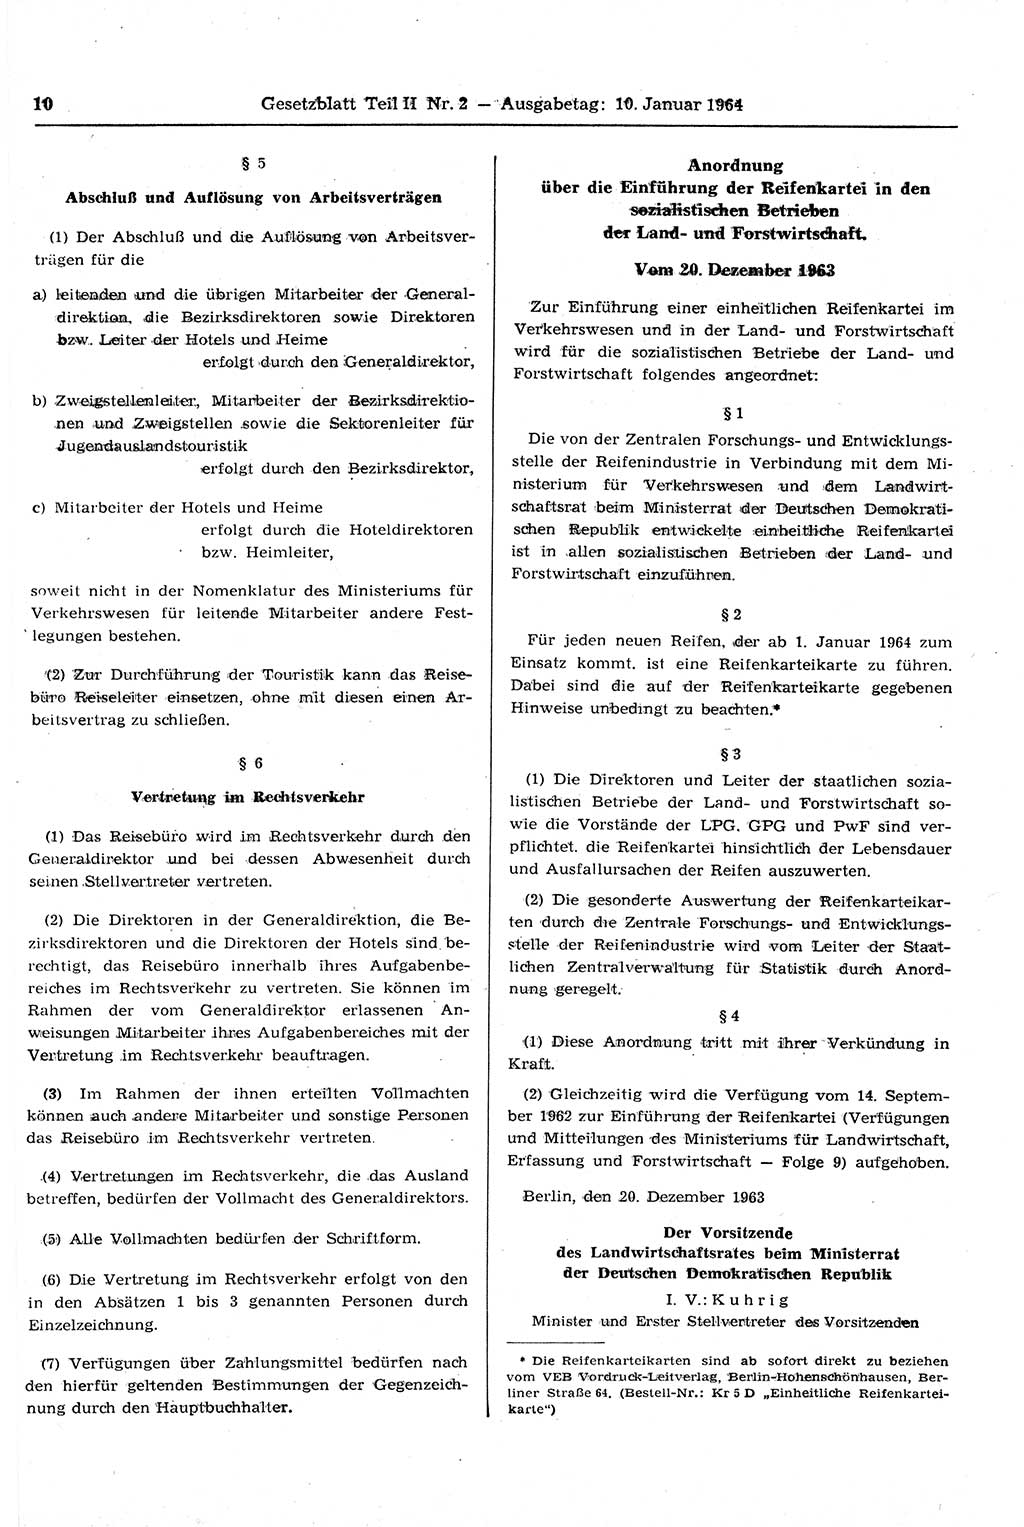 Gesetzblatt (GBl.) der Deutschen Demokratischen Republik (DDR) Teil ⅠⅠ 1964, Seite 10 (GBl. DDR ⅠⅠ 1964, S. 10)